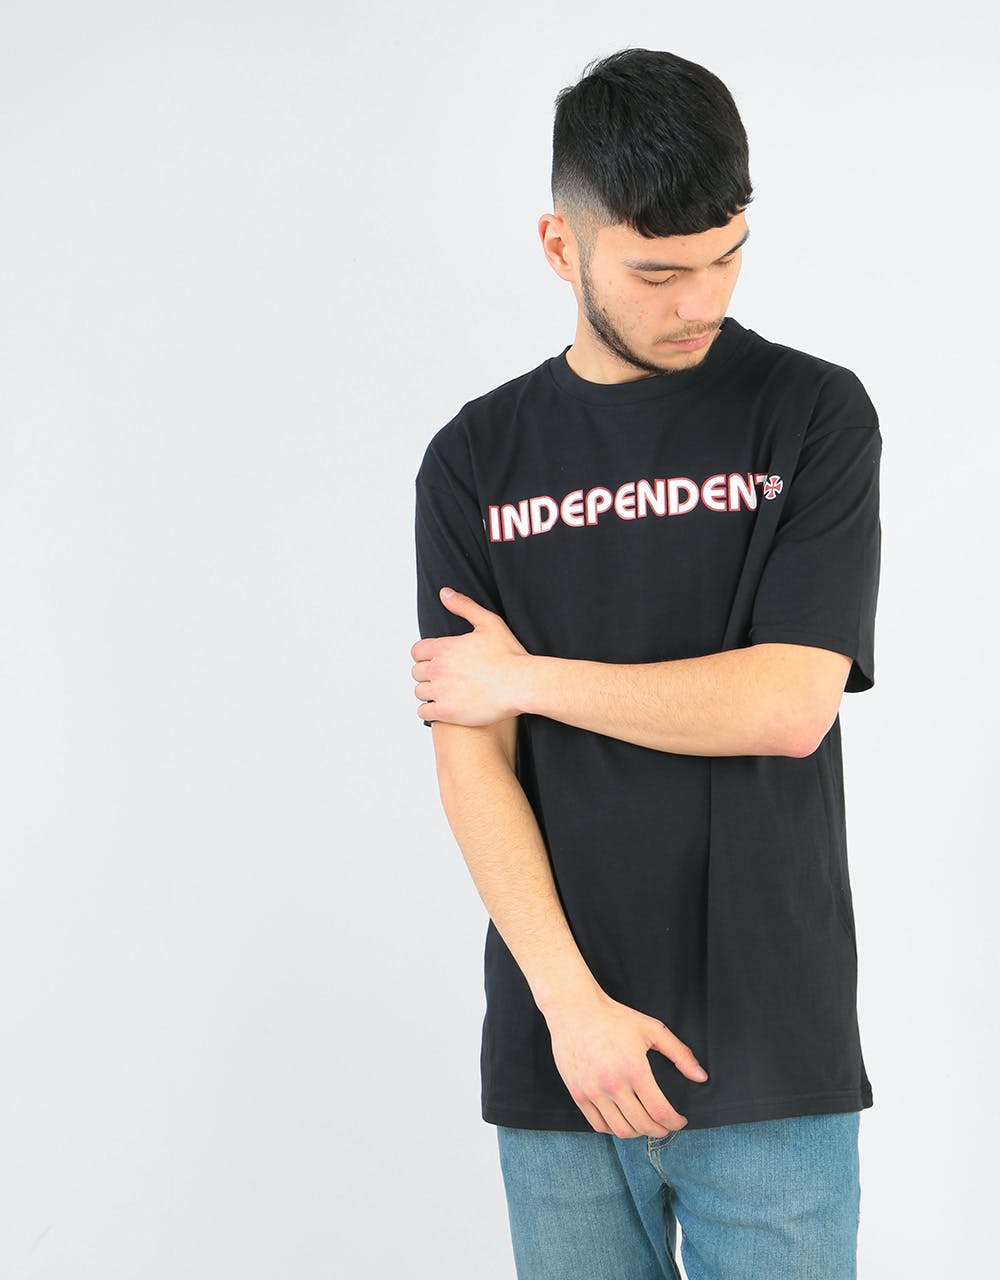 Independent Bar Cross T-Shirt - Black